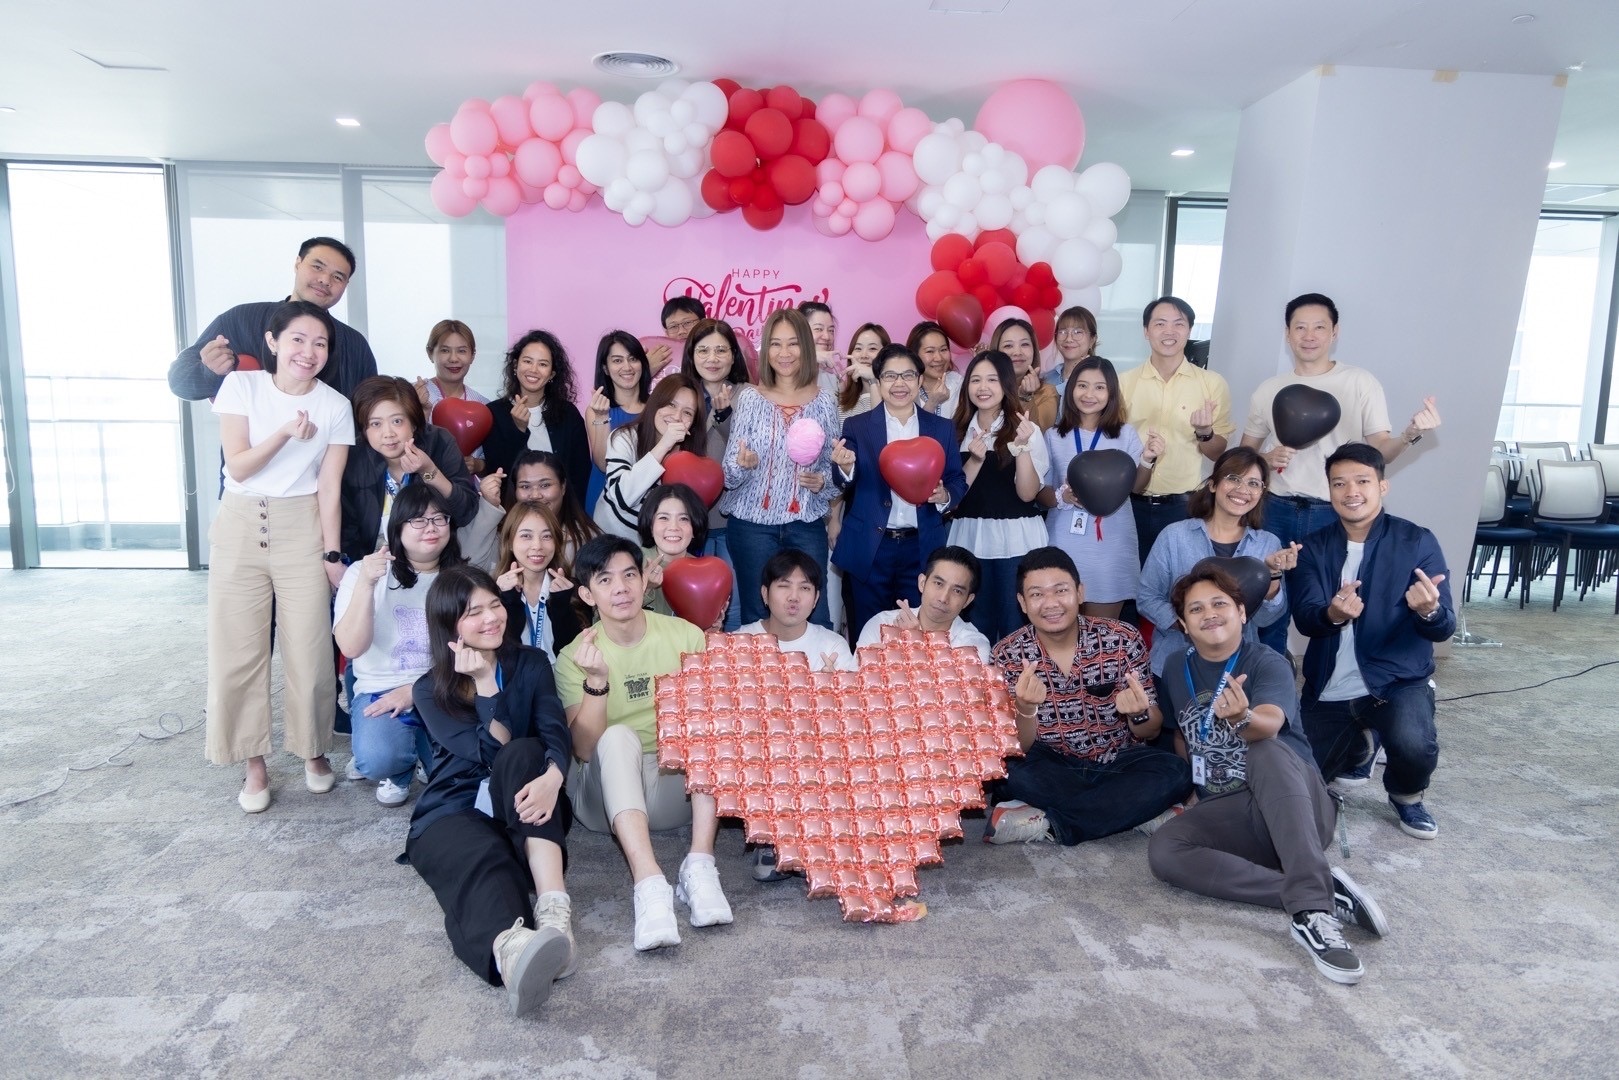 กรุงไทย–แอกซ่า ประกันชีวิต จัดกิจกรรมHappy Valentine’s Day -Love is Sharing, Love is Caring, Love out Loudในเทศกาลแห่งความรัก